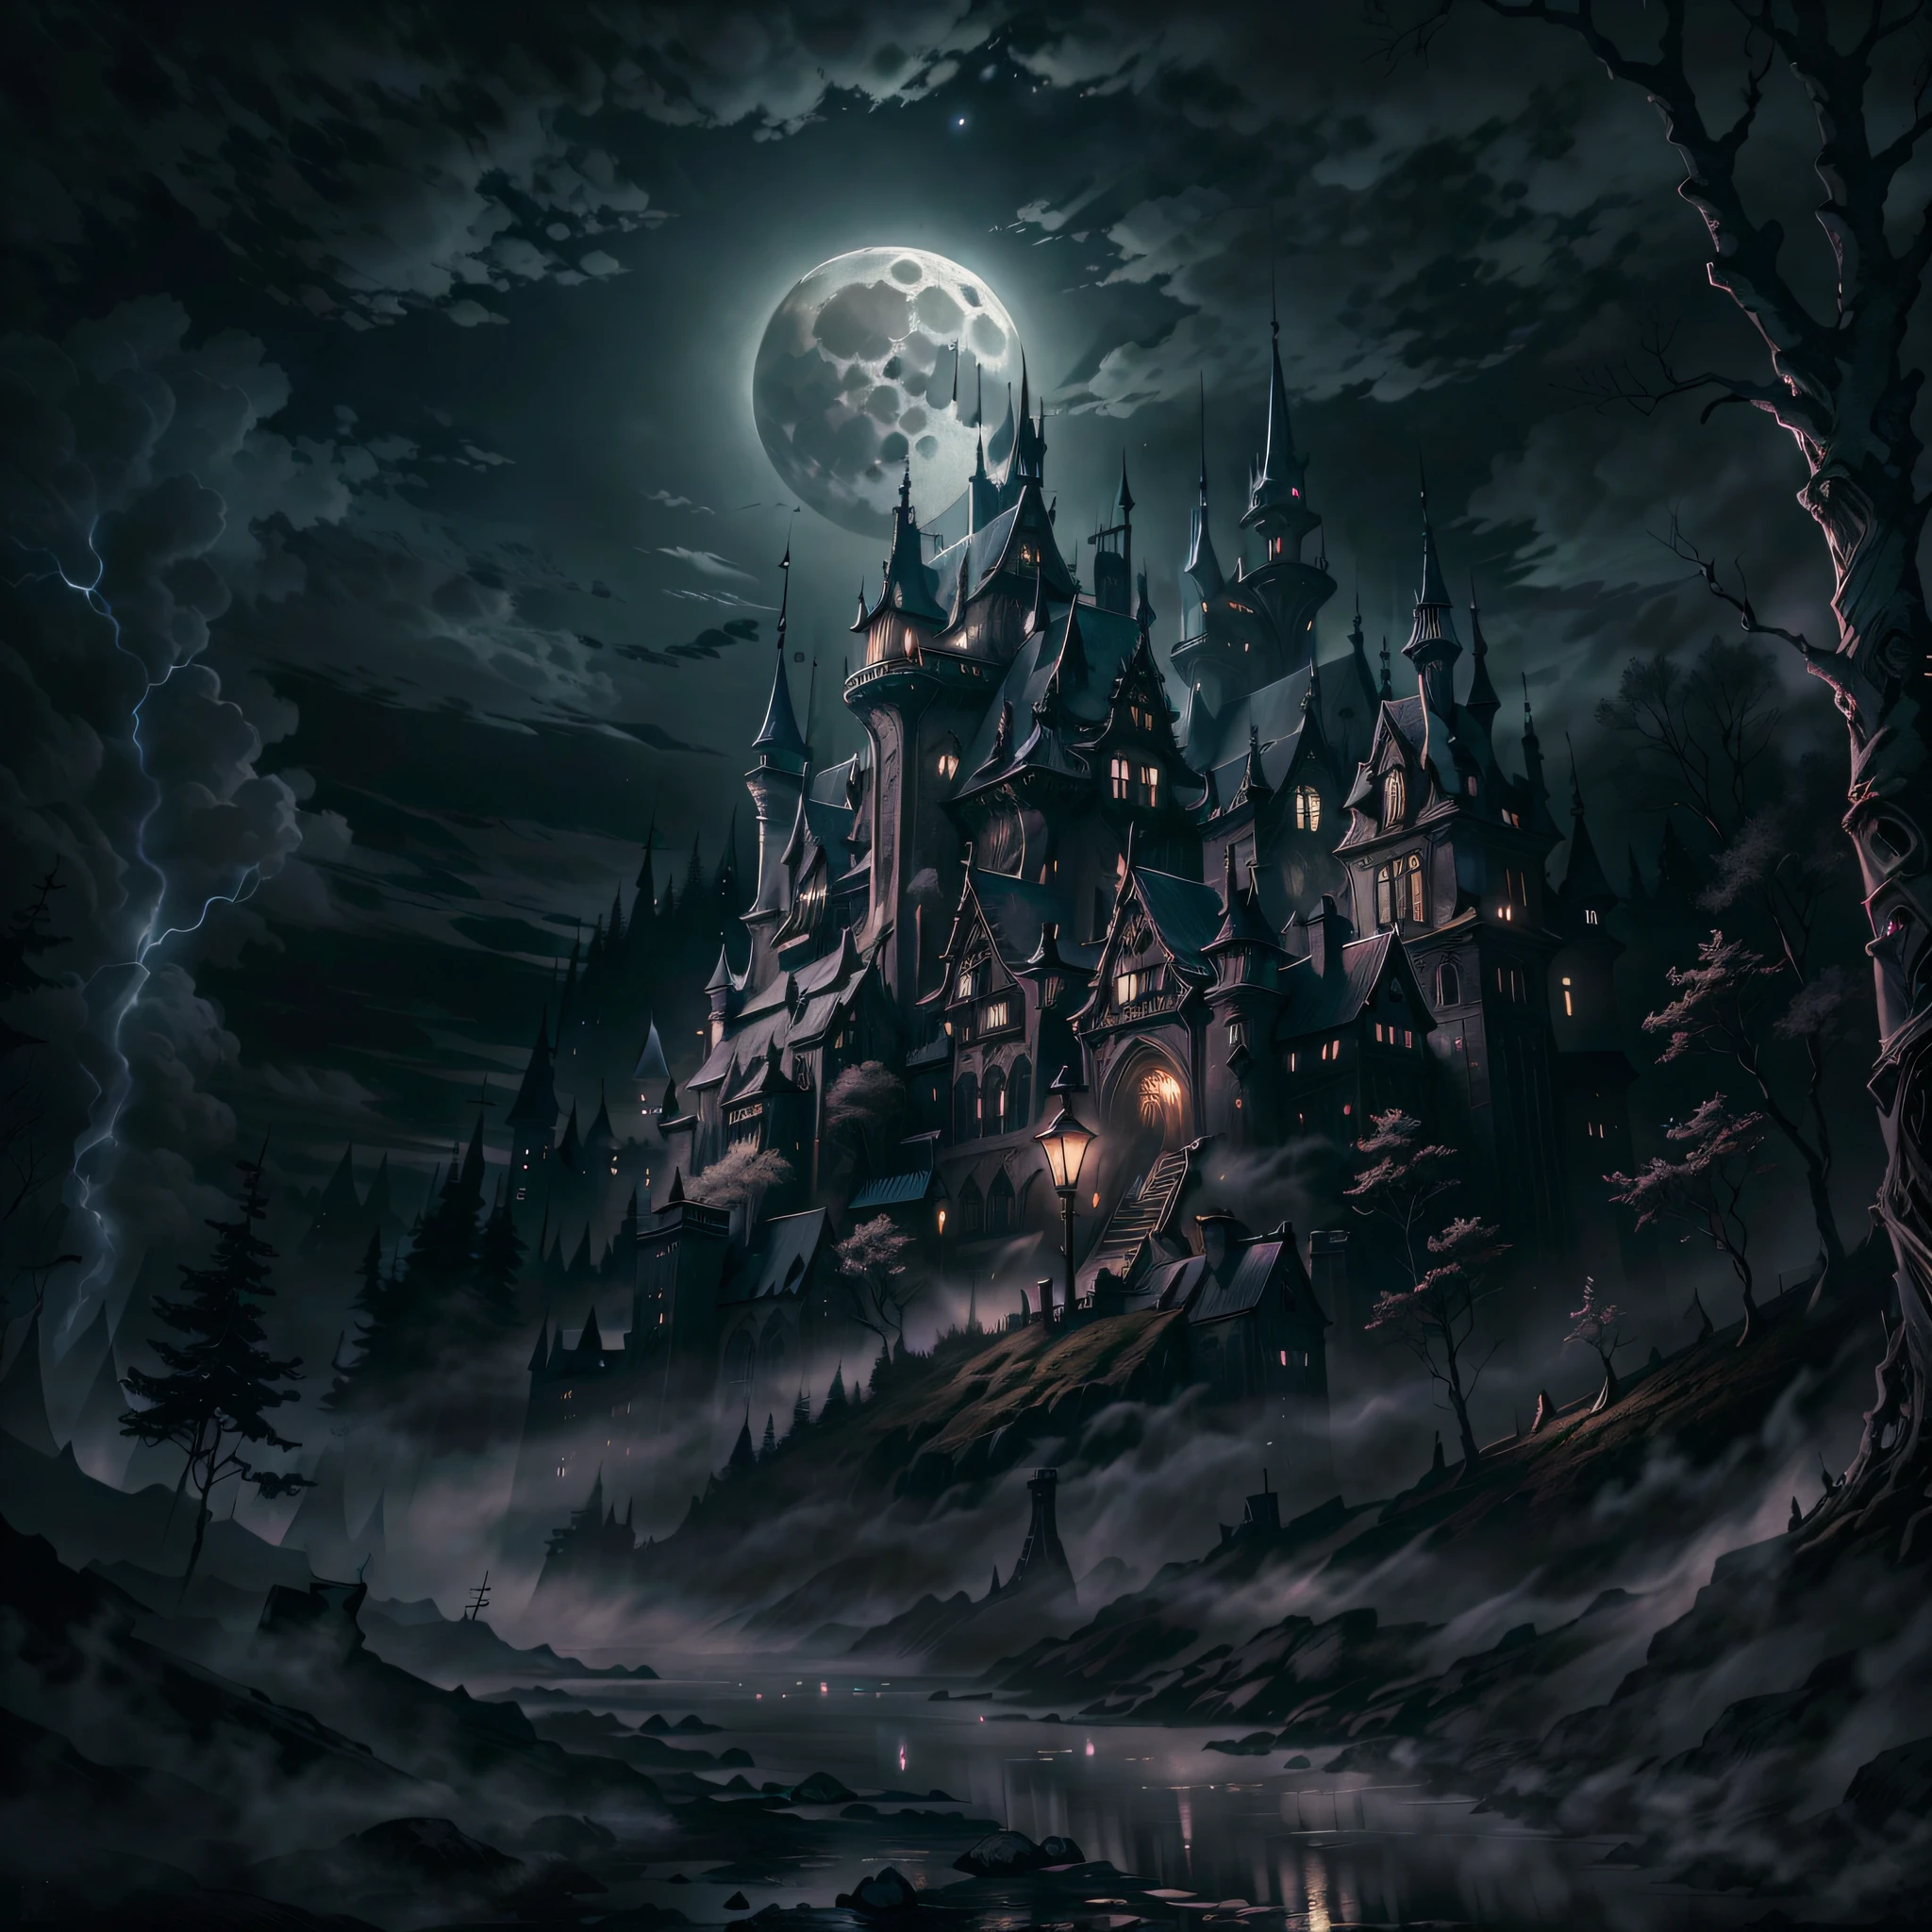 月亮, 黑夜, 阴暗的古老城堡, 背景为黑暗森林,人类发展报告,超高清,8千, 最好的质量, 杰作, 非常详细, 超精细绘画